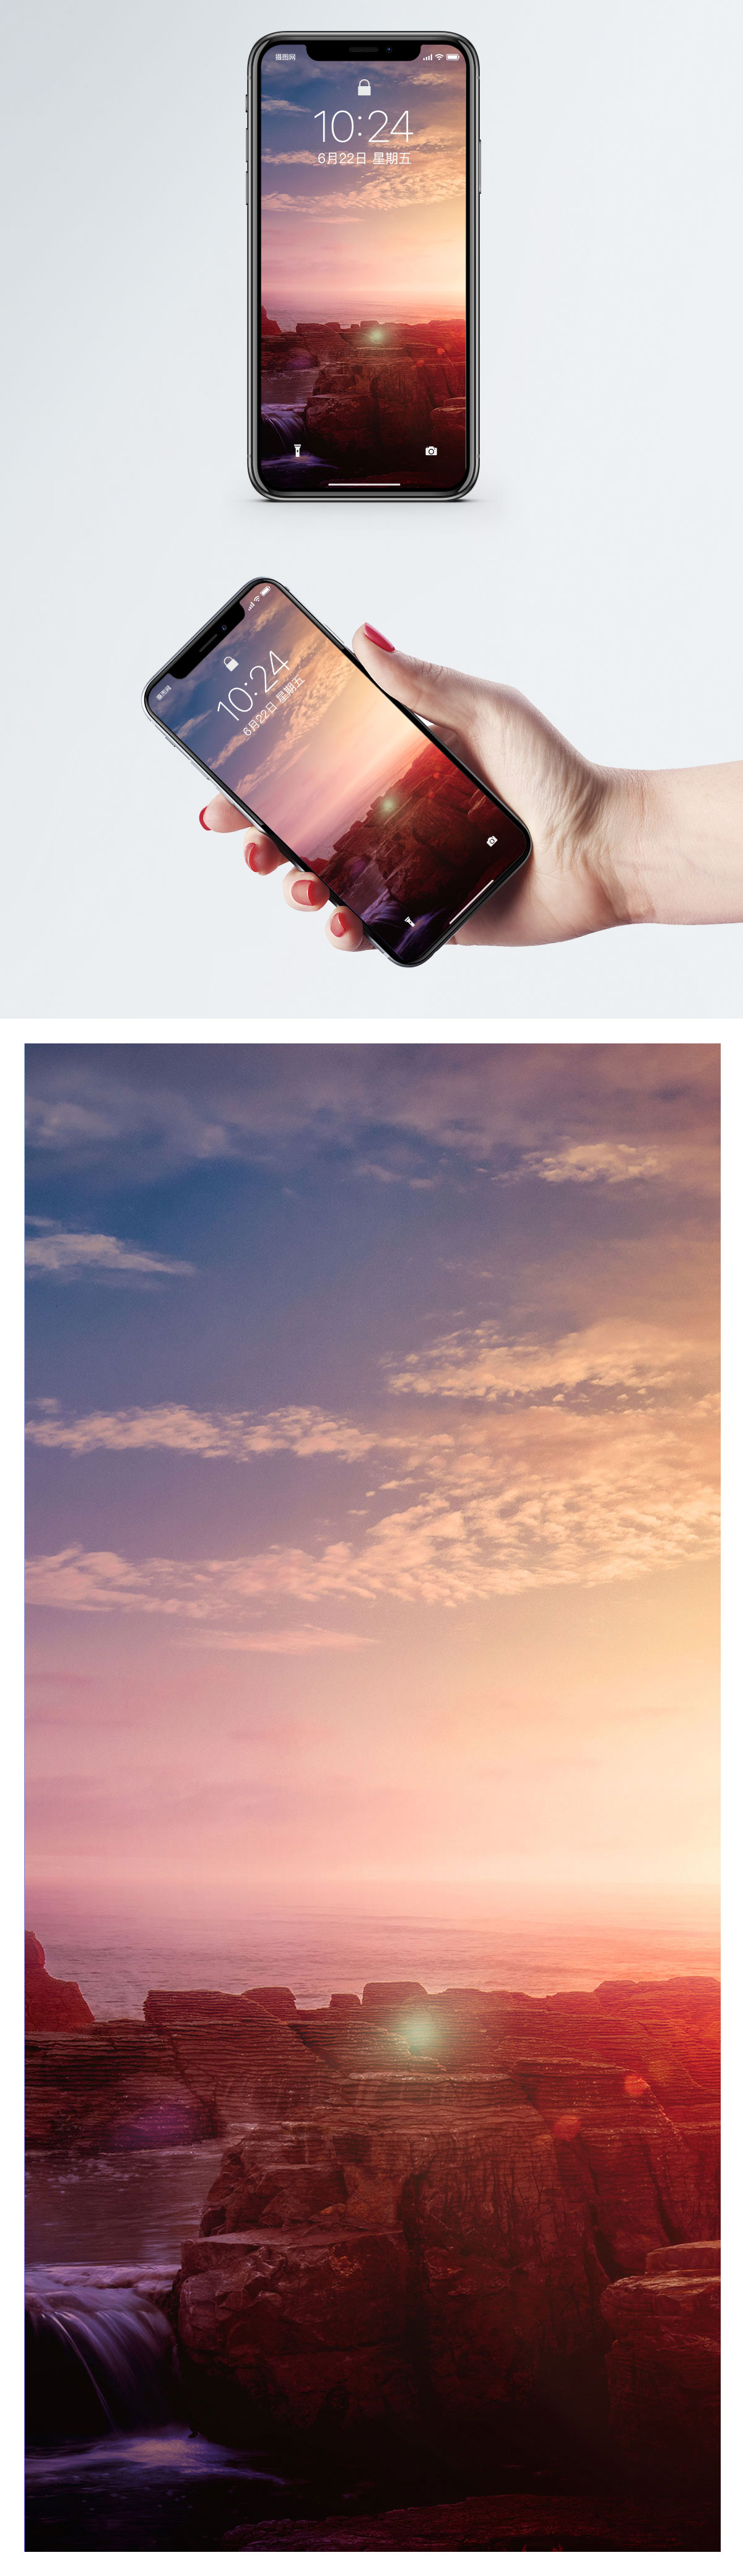 夕陽下的景色手機壁紙圖片素材 Jpg圖片尺寸86 300px 高清圖片 Zh Lovepik Com